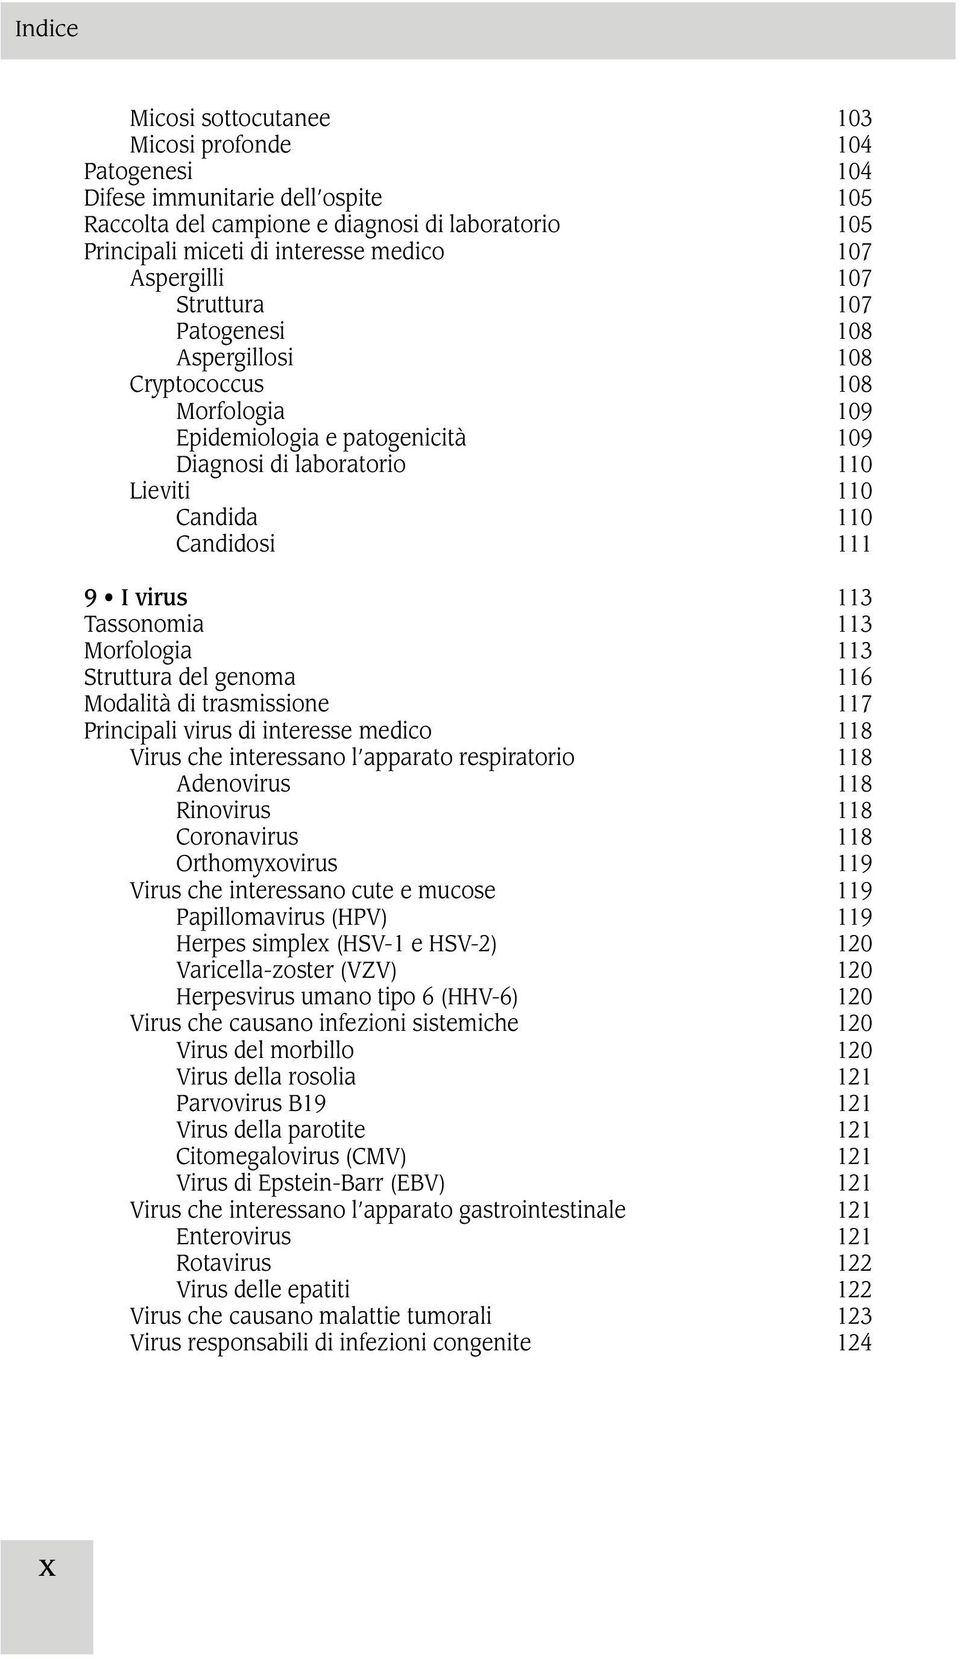 Tassonomia 113 Morfologia 113 Struttura del genoma 116 Modalità di trasmissione 117 Principali virus di interesse medico 118 Virus che interessano l apparato respiratorio 118 Adenovirus 118 Rinovirus